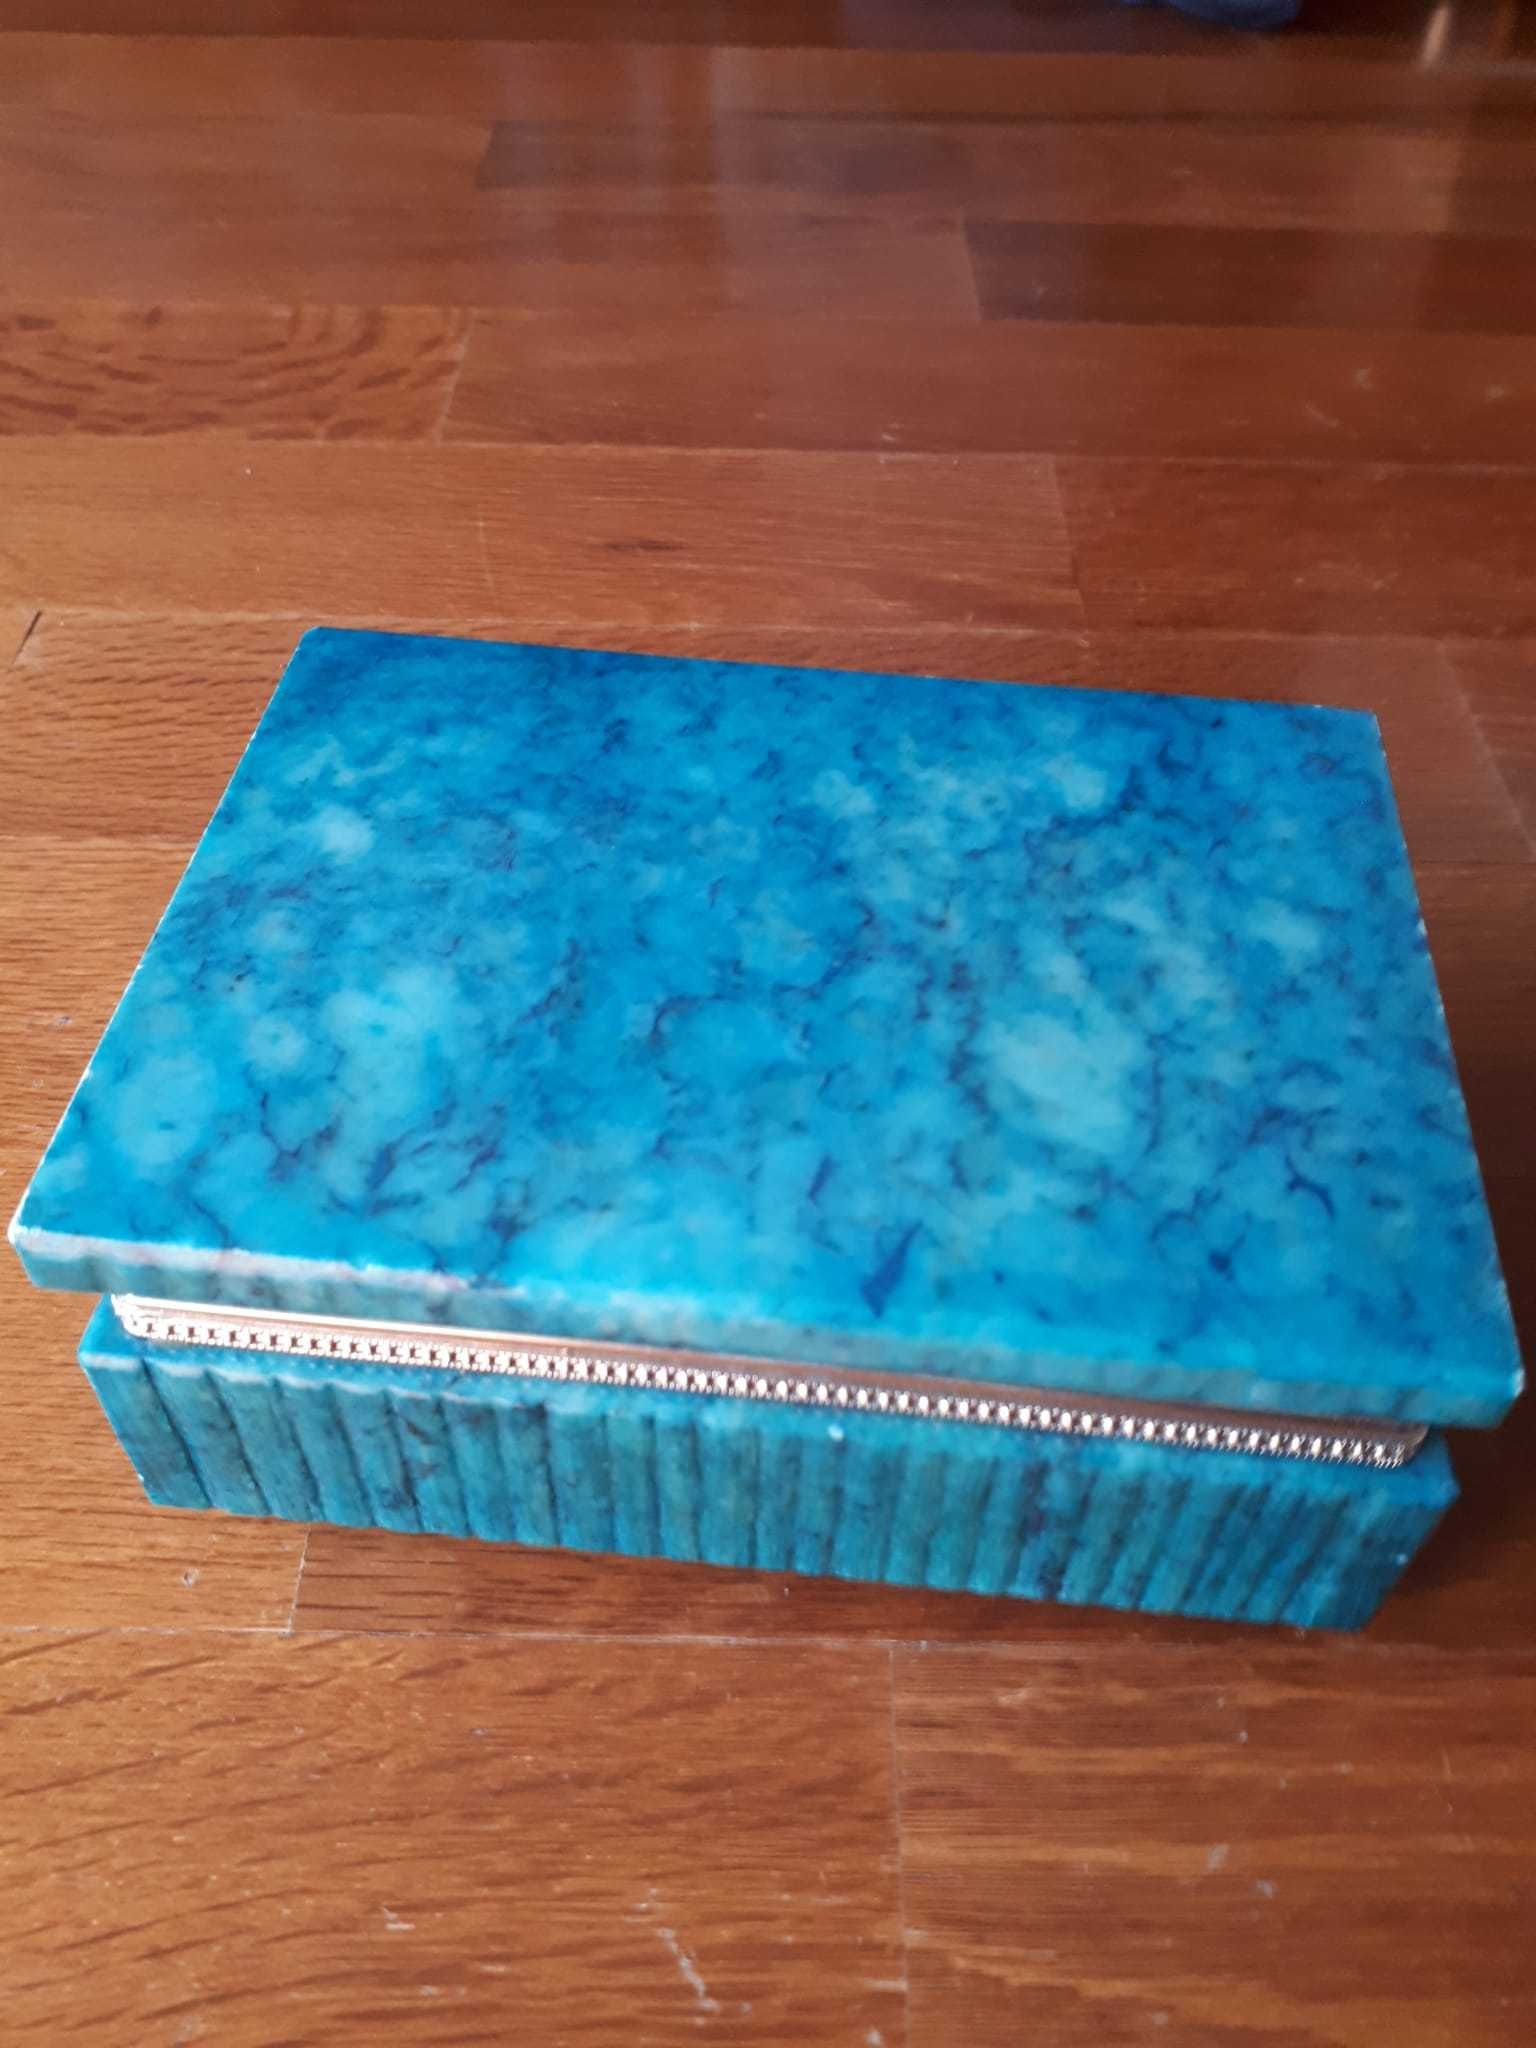 Alabastro legitimo conjunto caixa e isqueiro